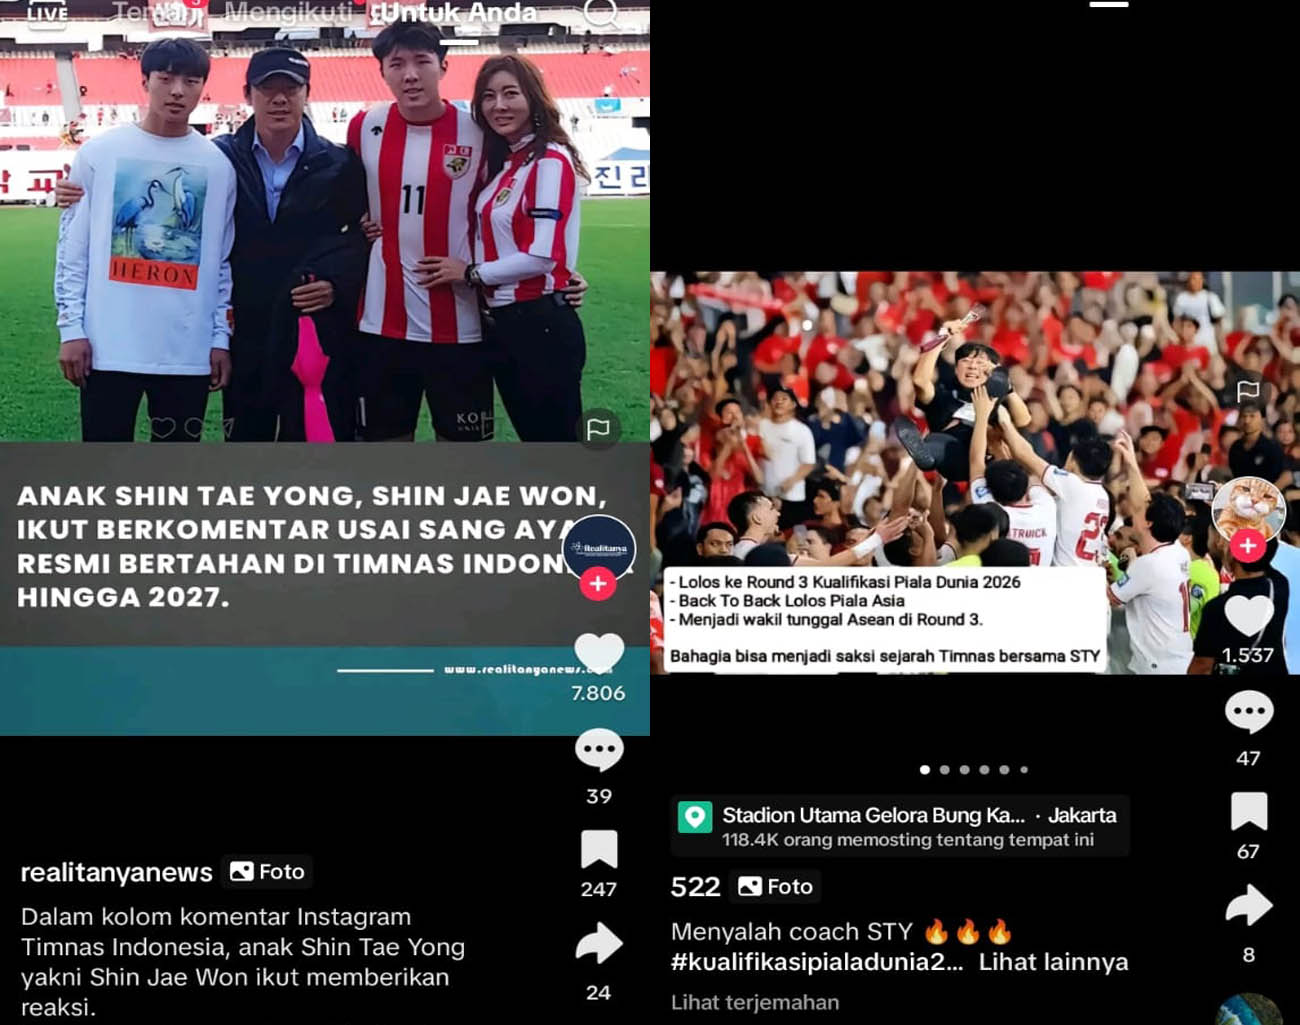 Ungkapan Anak Shin Tae Young, Shin Jae Won, Ayahnya Bertahan di Indonesia, Kualifikasi Piala Dunia 2026